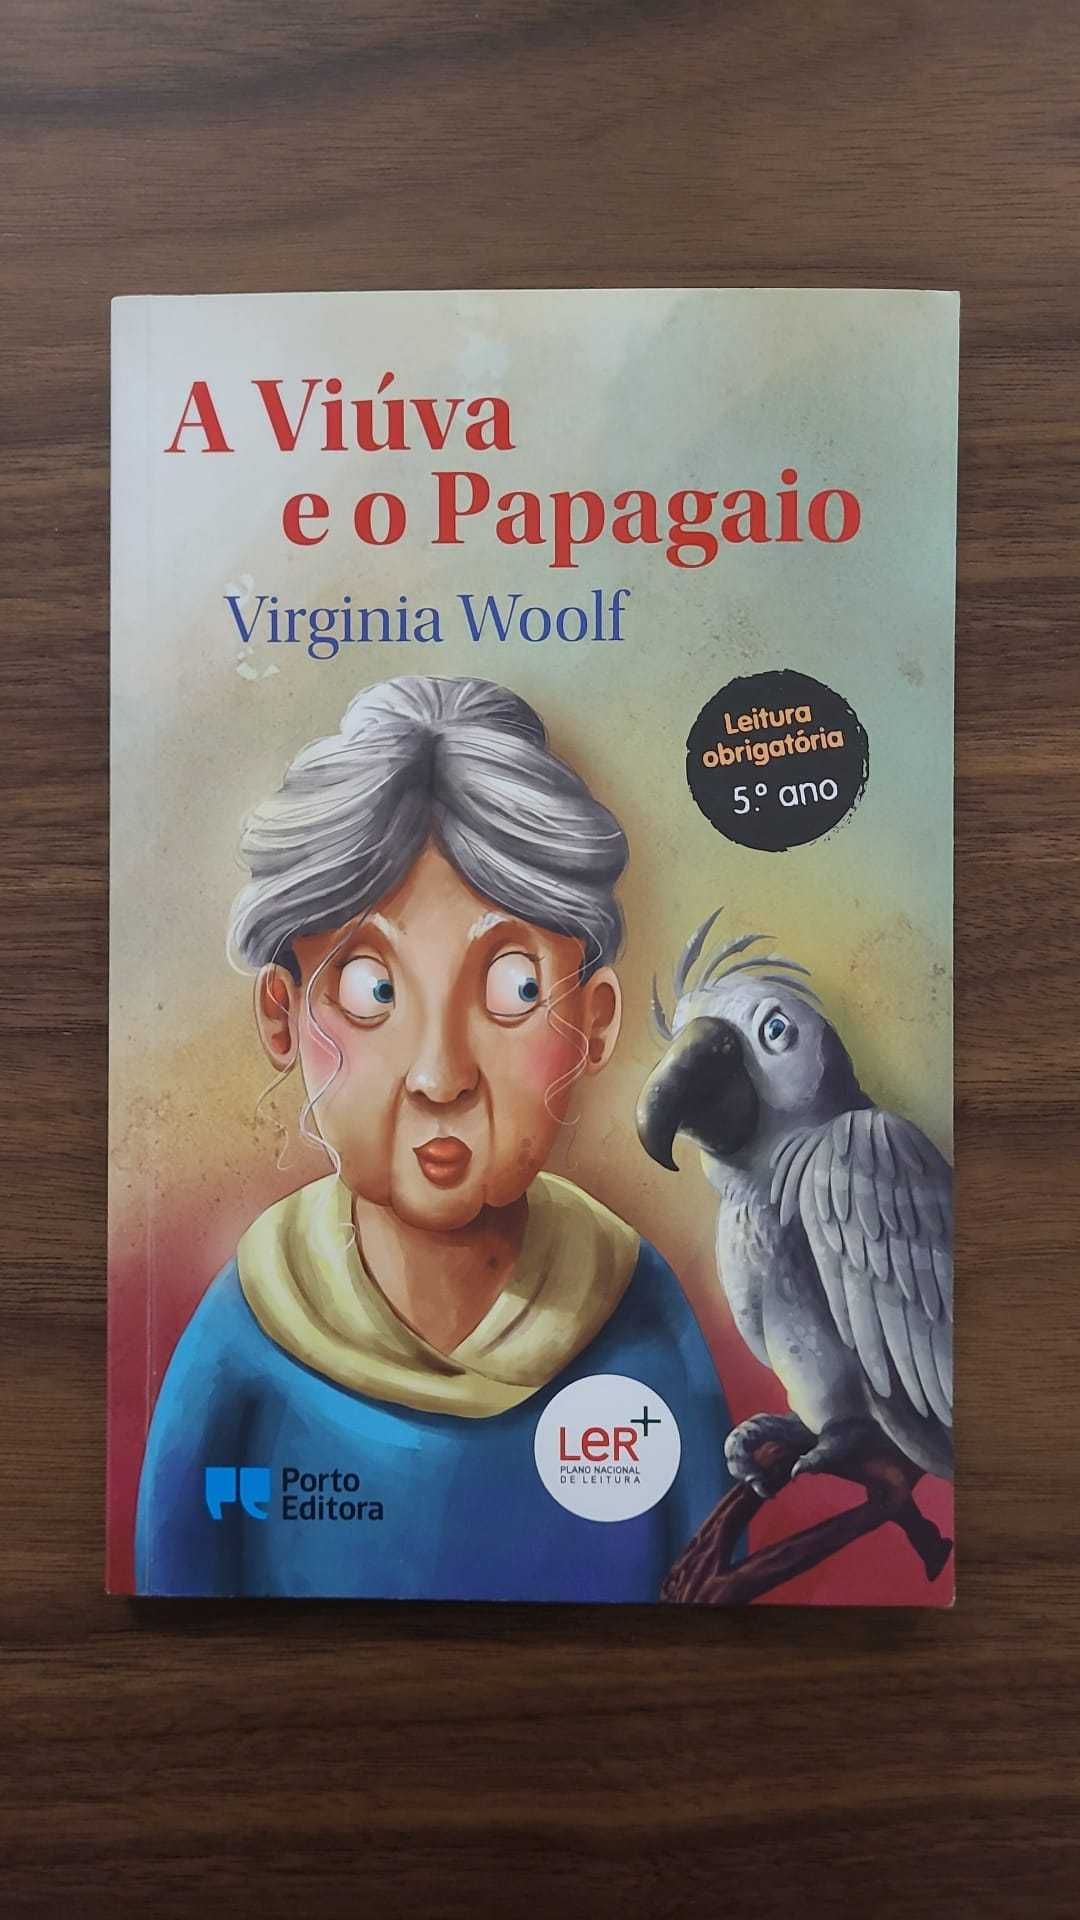 Livro A Viúva e o Papagaio (Leitura obrigatória 5 ano)